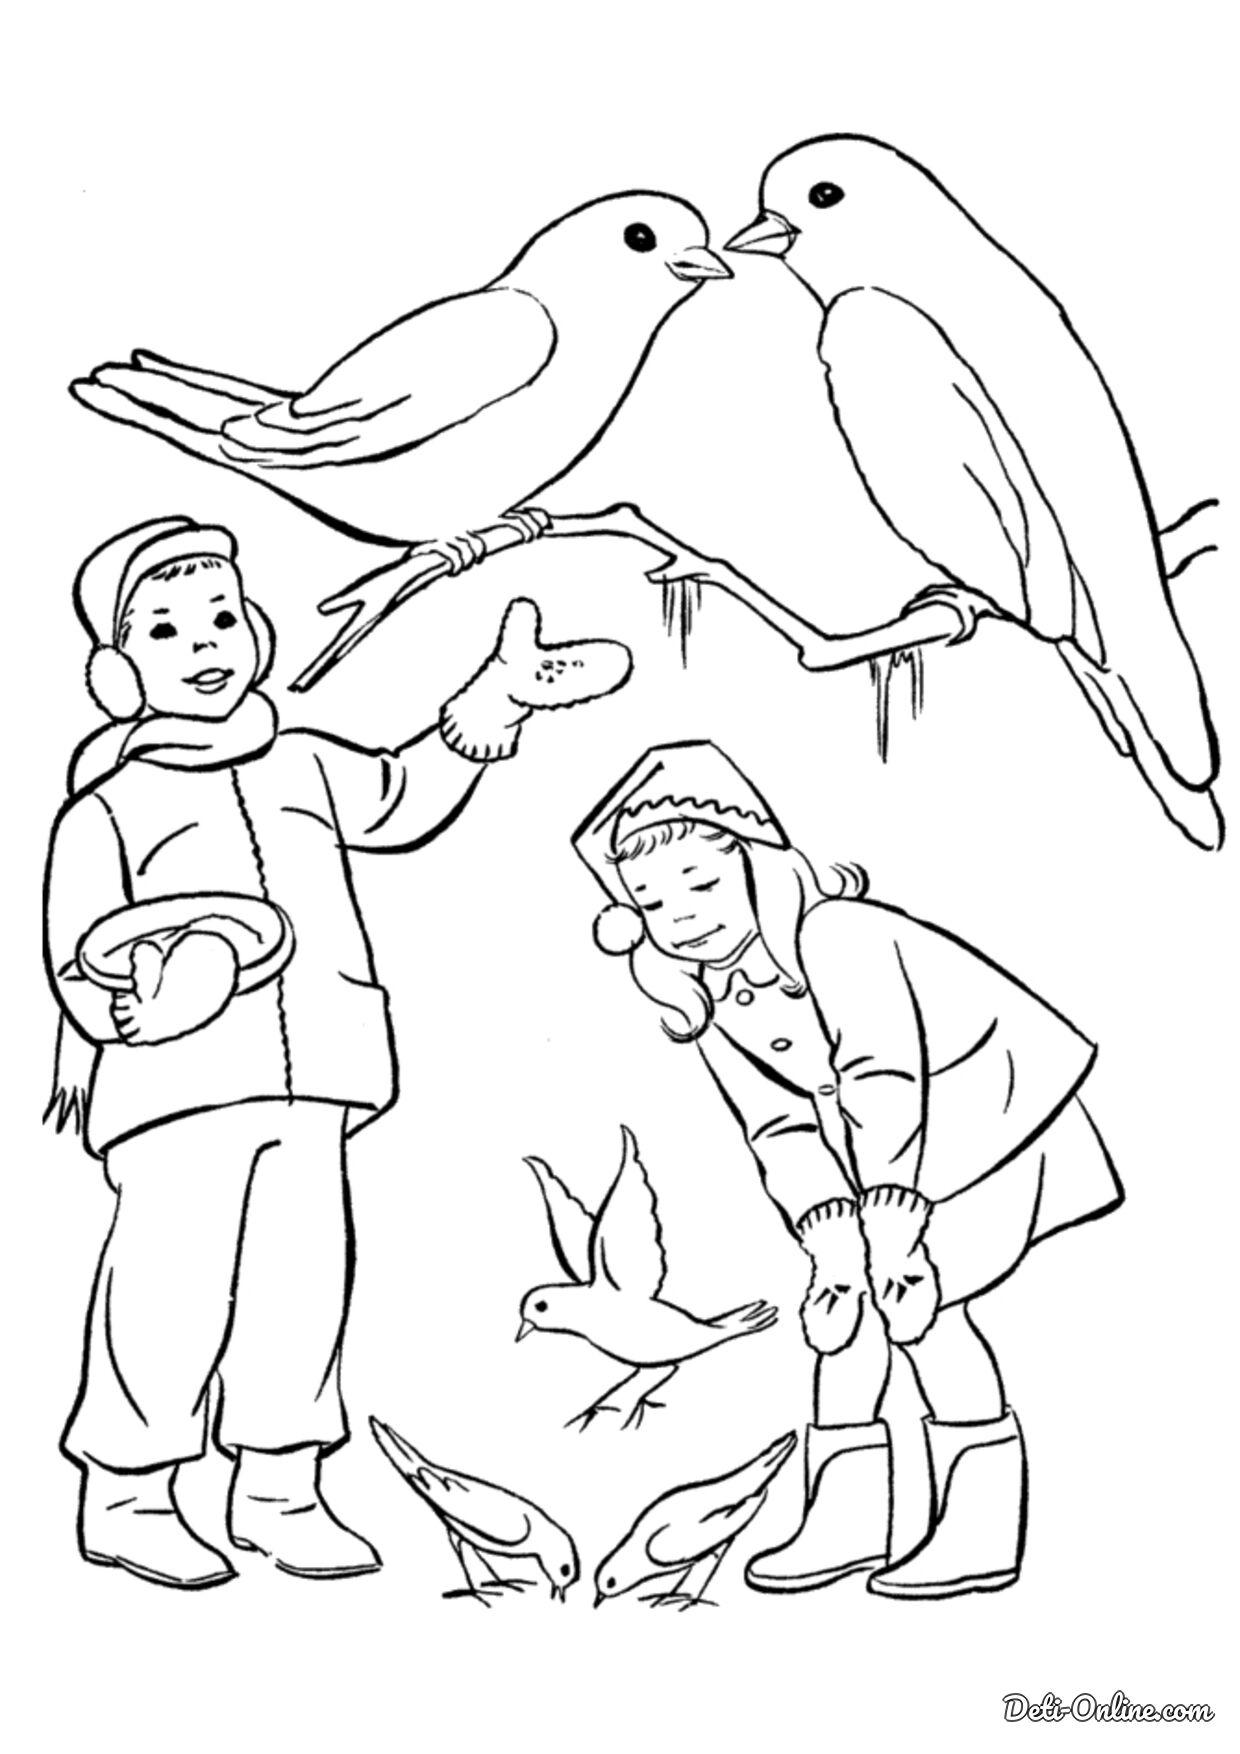 Раскраска Зимующие птицы распечатать бесплатно | Раскраски, Птицы, Шаблоны  птиц